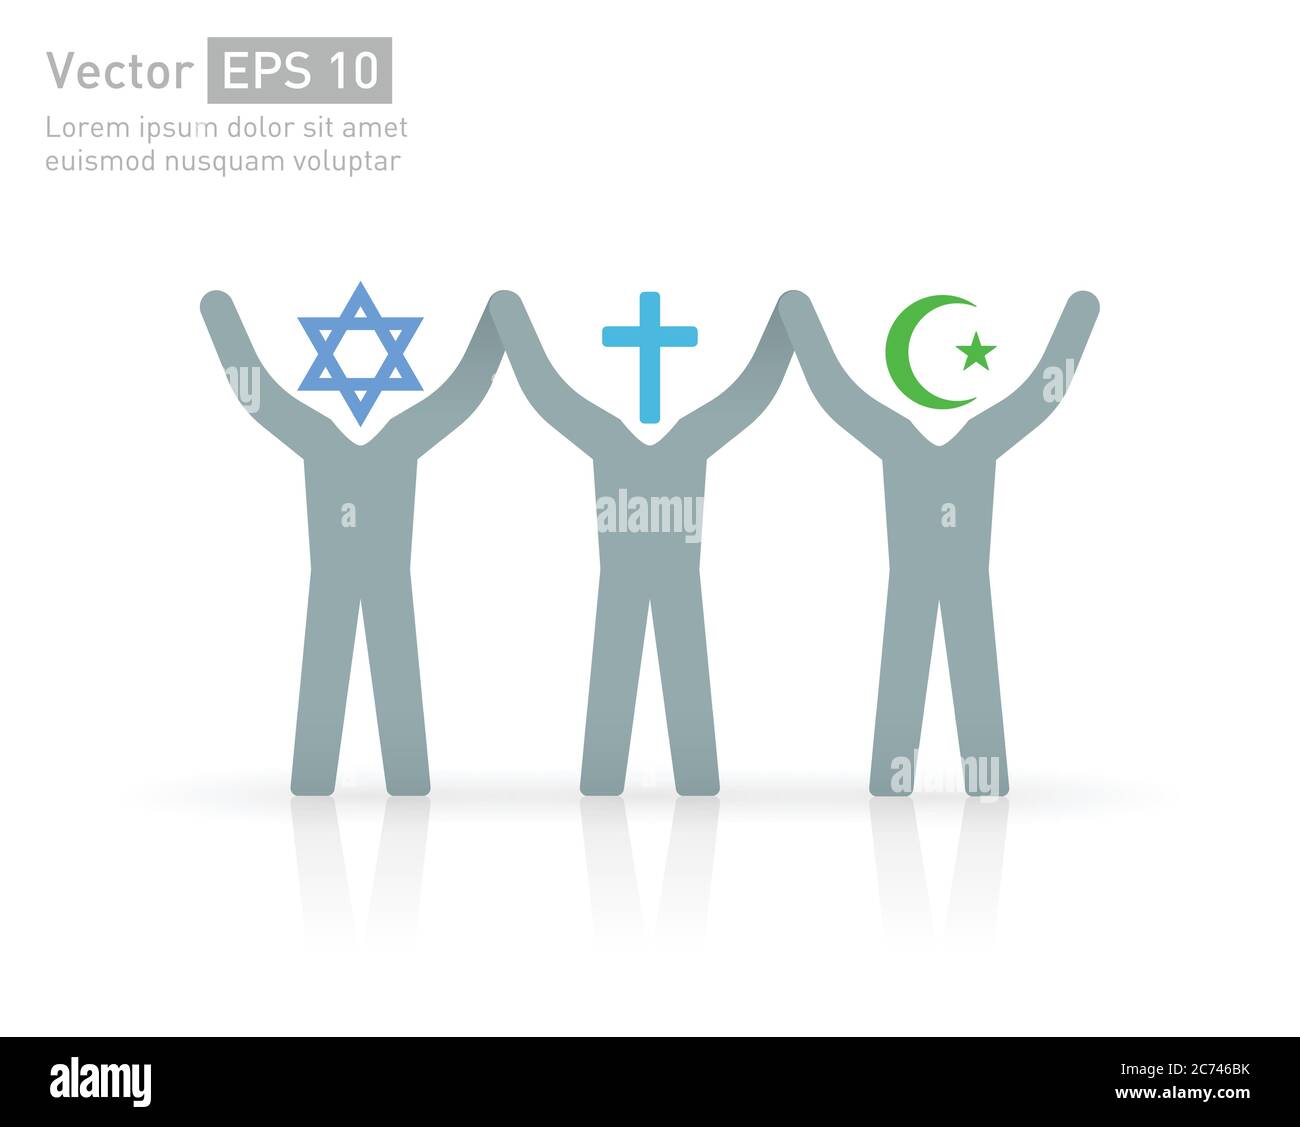 Freundschaft und Frieden Menschen verschiedener Religionen. Islam (Muslim), Christentum (Christian) und Judentum (jüdisch) Stock Vektor